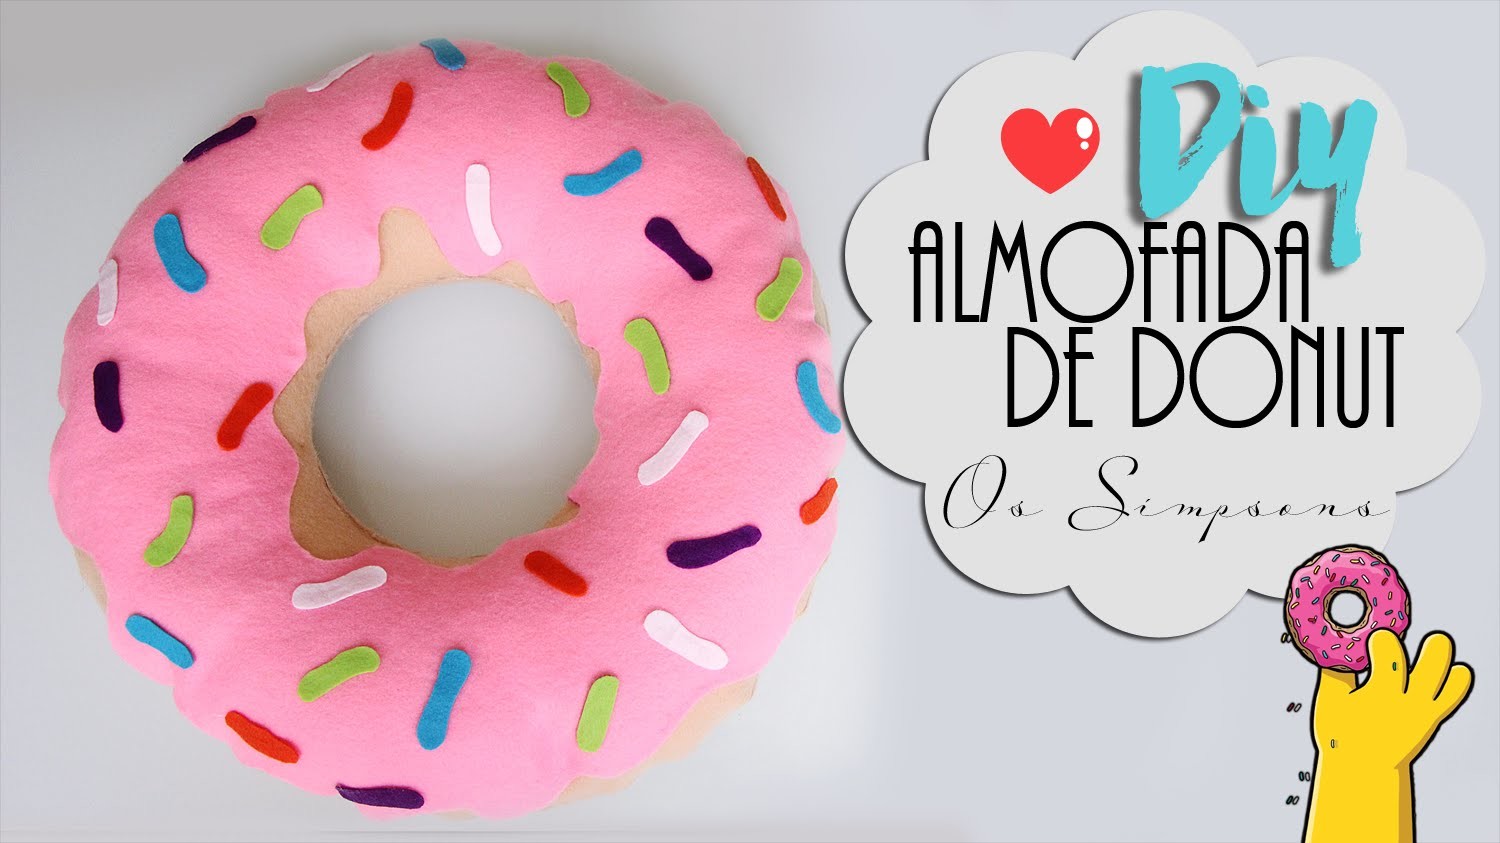 DIY: Almofada de Donut | Os simpsons | Sem costura, super fácil!